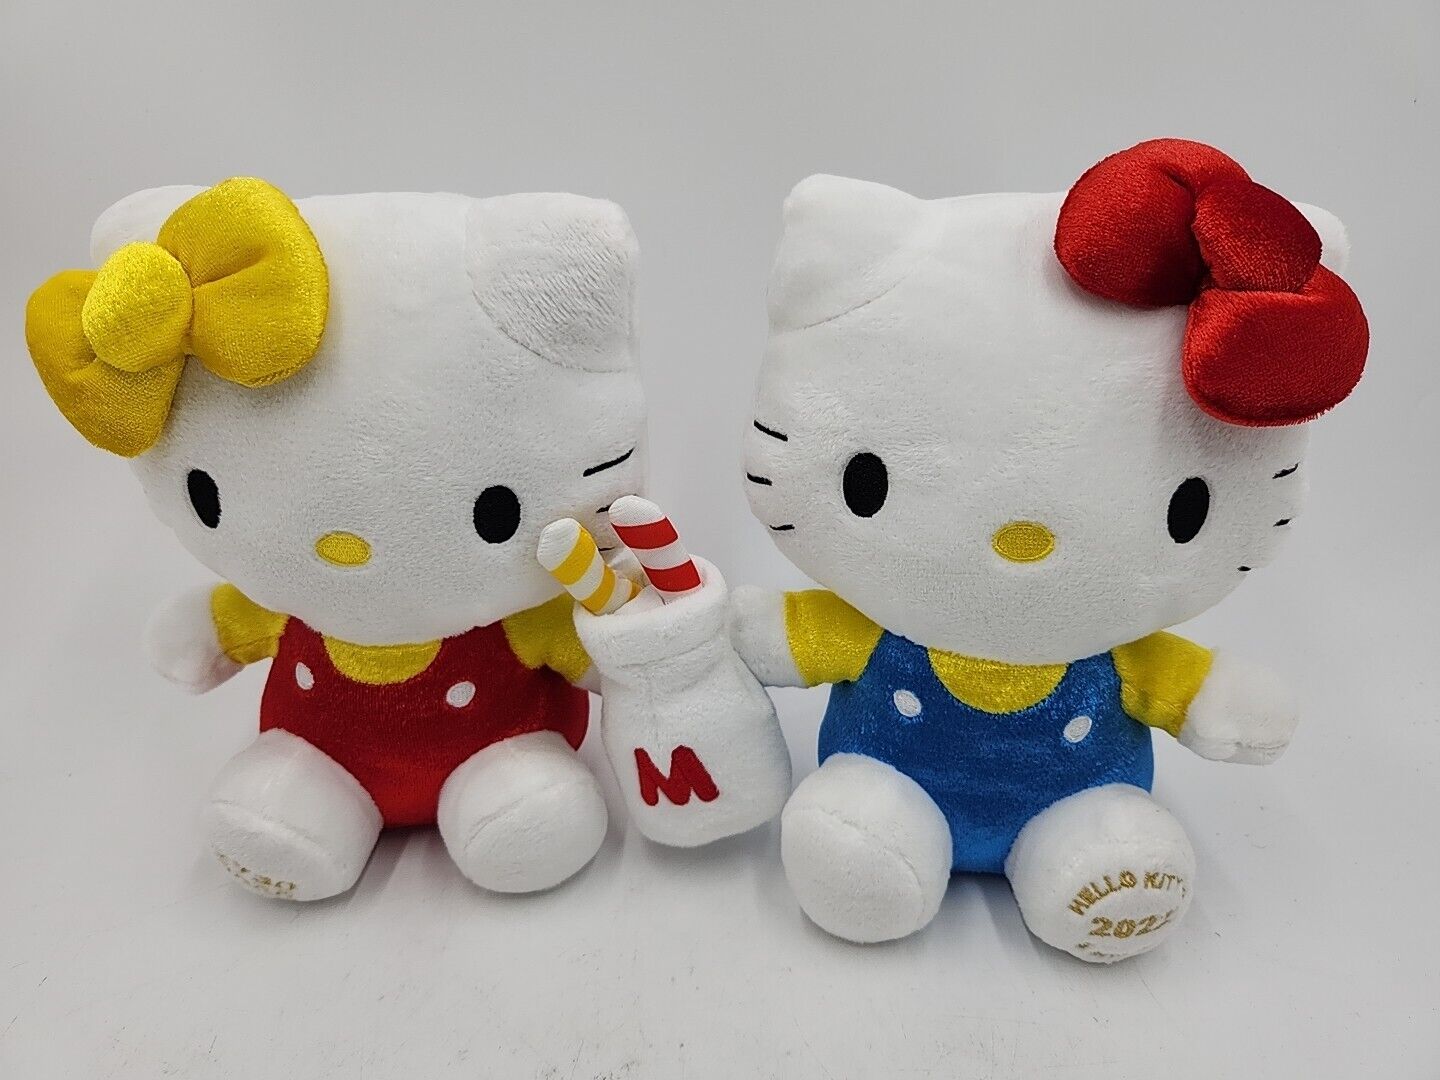 NEW Hello Kitty and Mimmy Anniversary 2022 Plush Rare